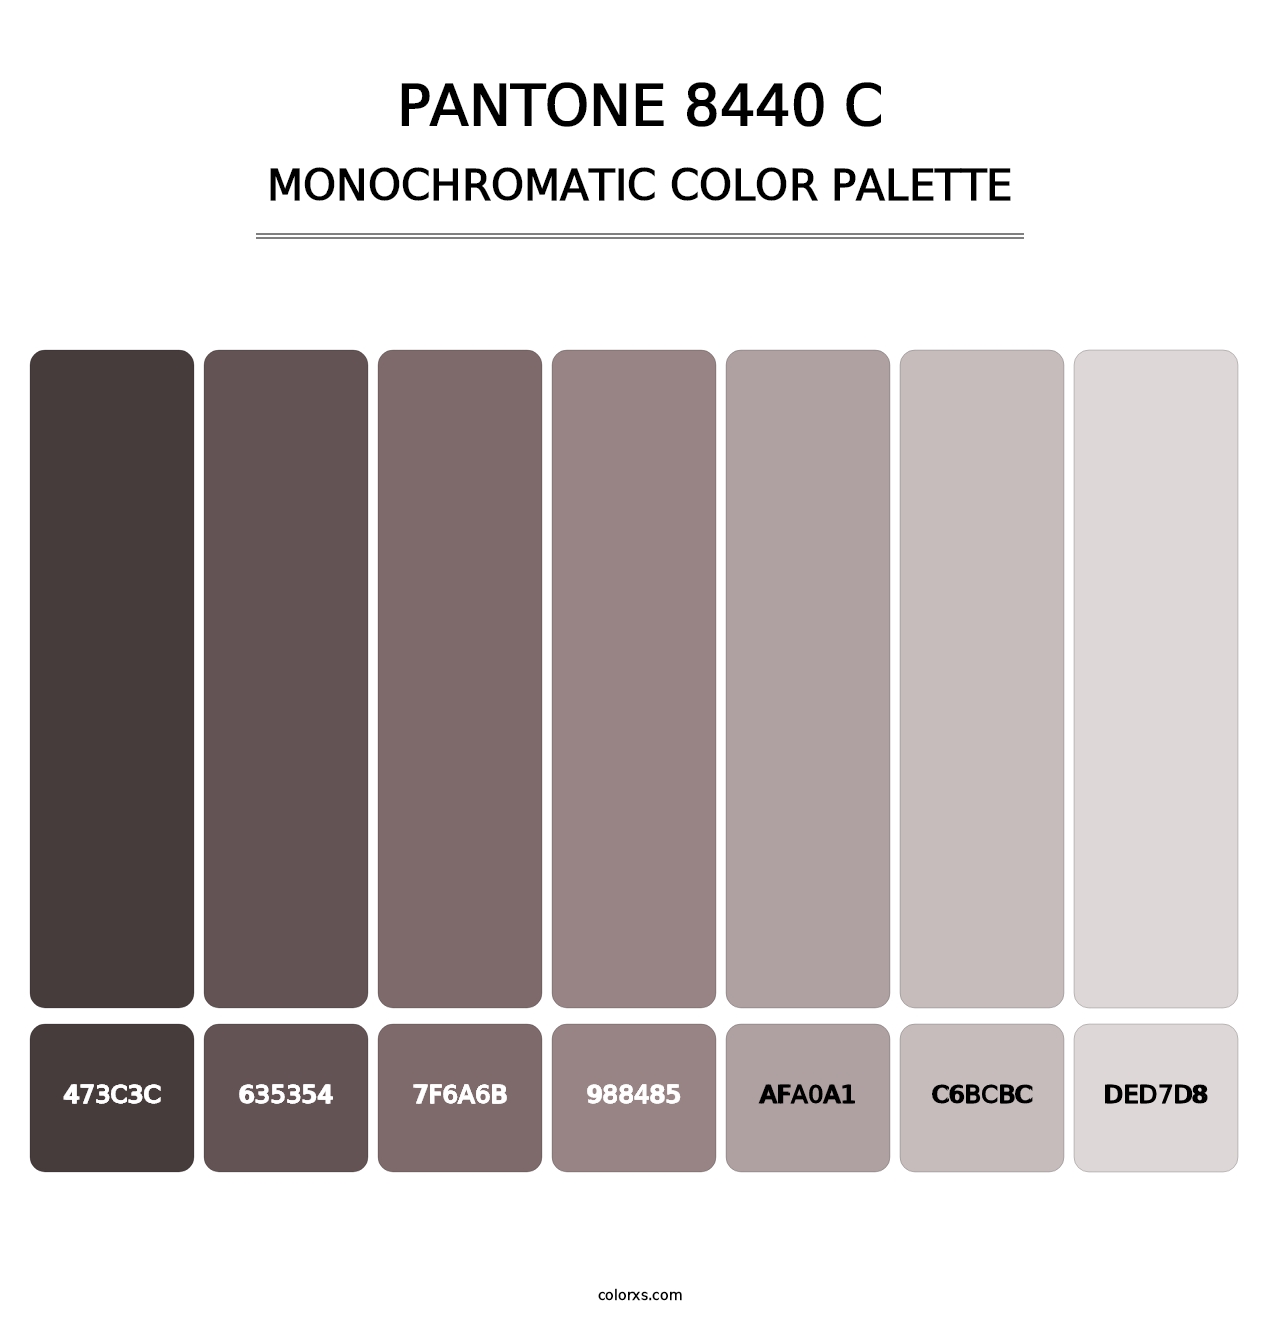 PANTONE 8440 C - Monochromatic Color Palette